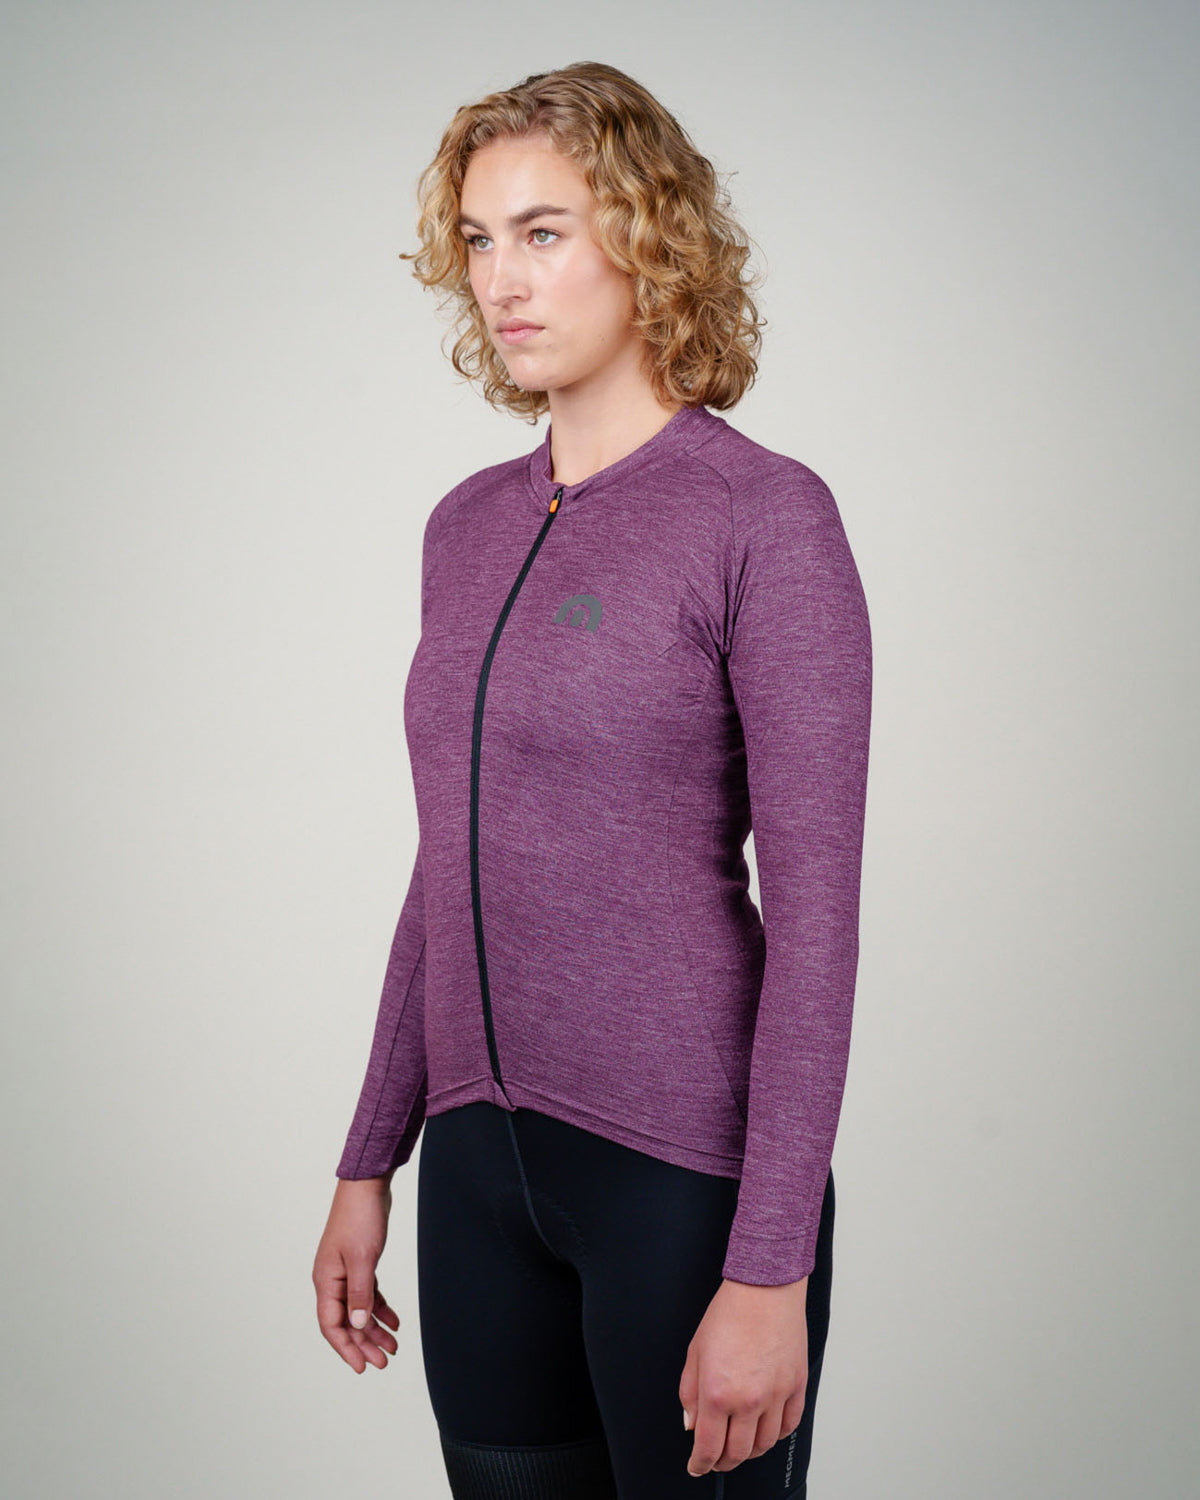 Women's Merino Gen2 Long Sleeve Jersey powered by Nuyarn®